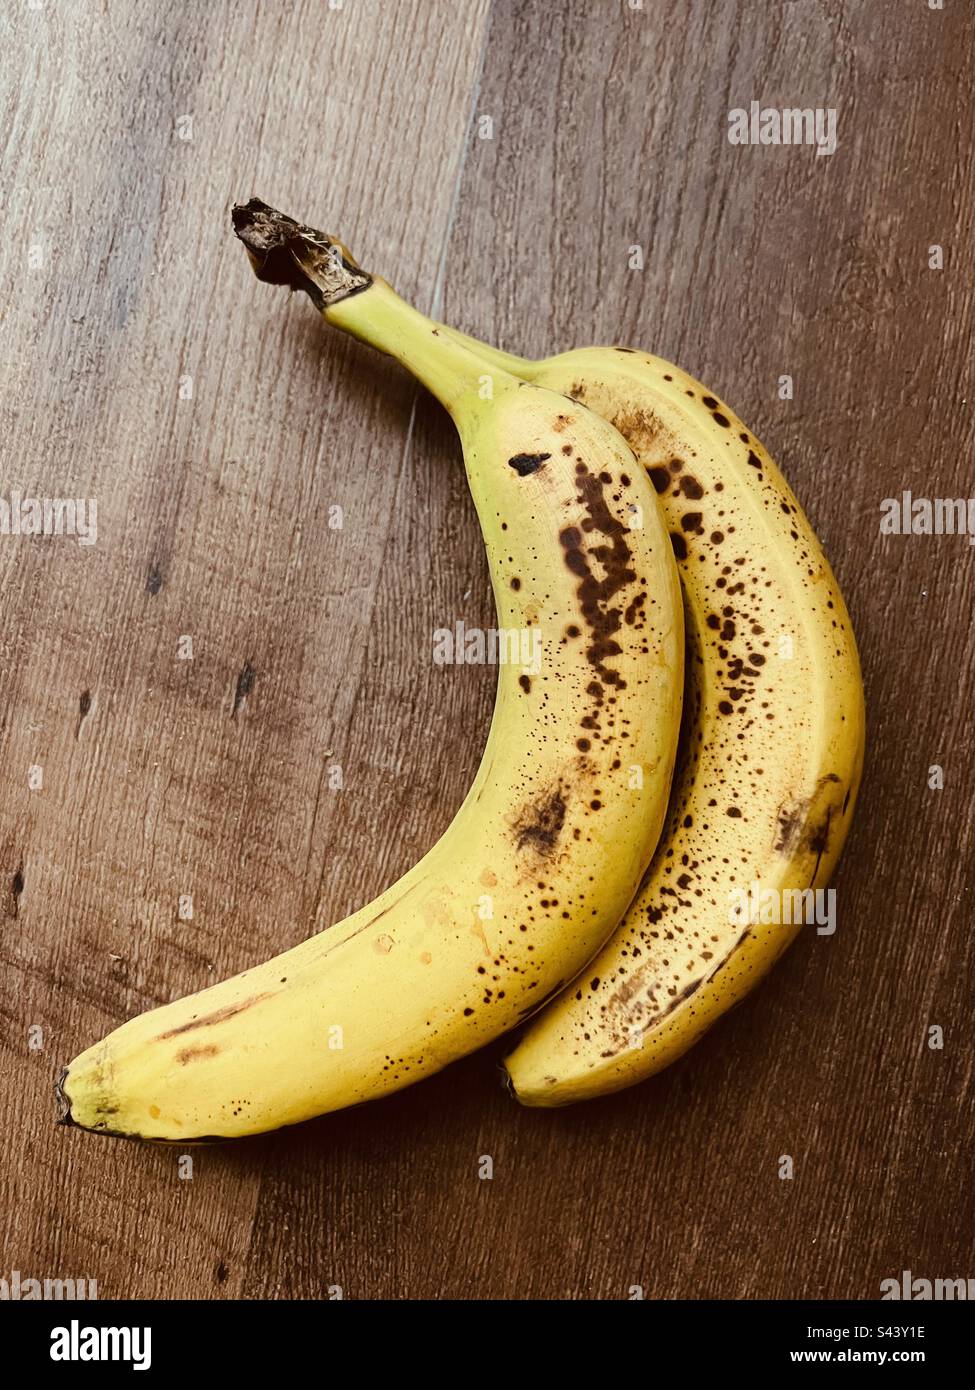 Overripe bananas Stock Photo